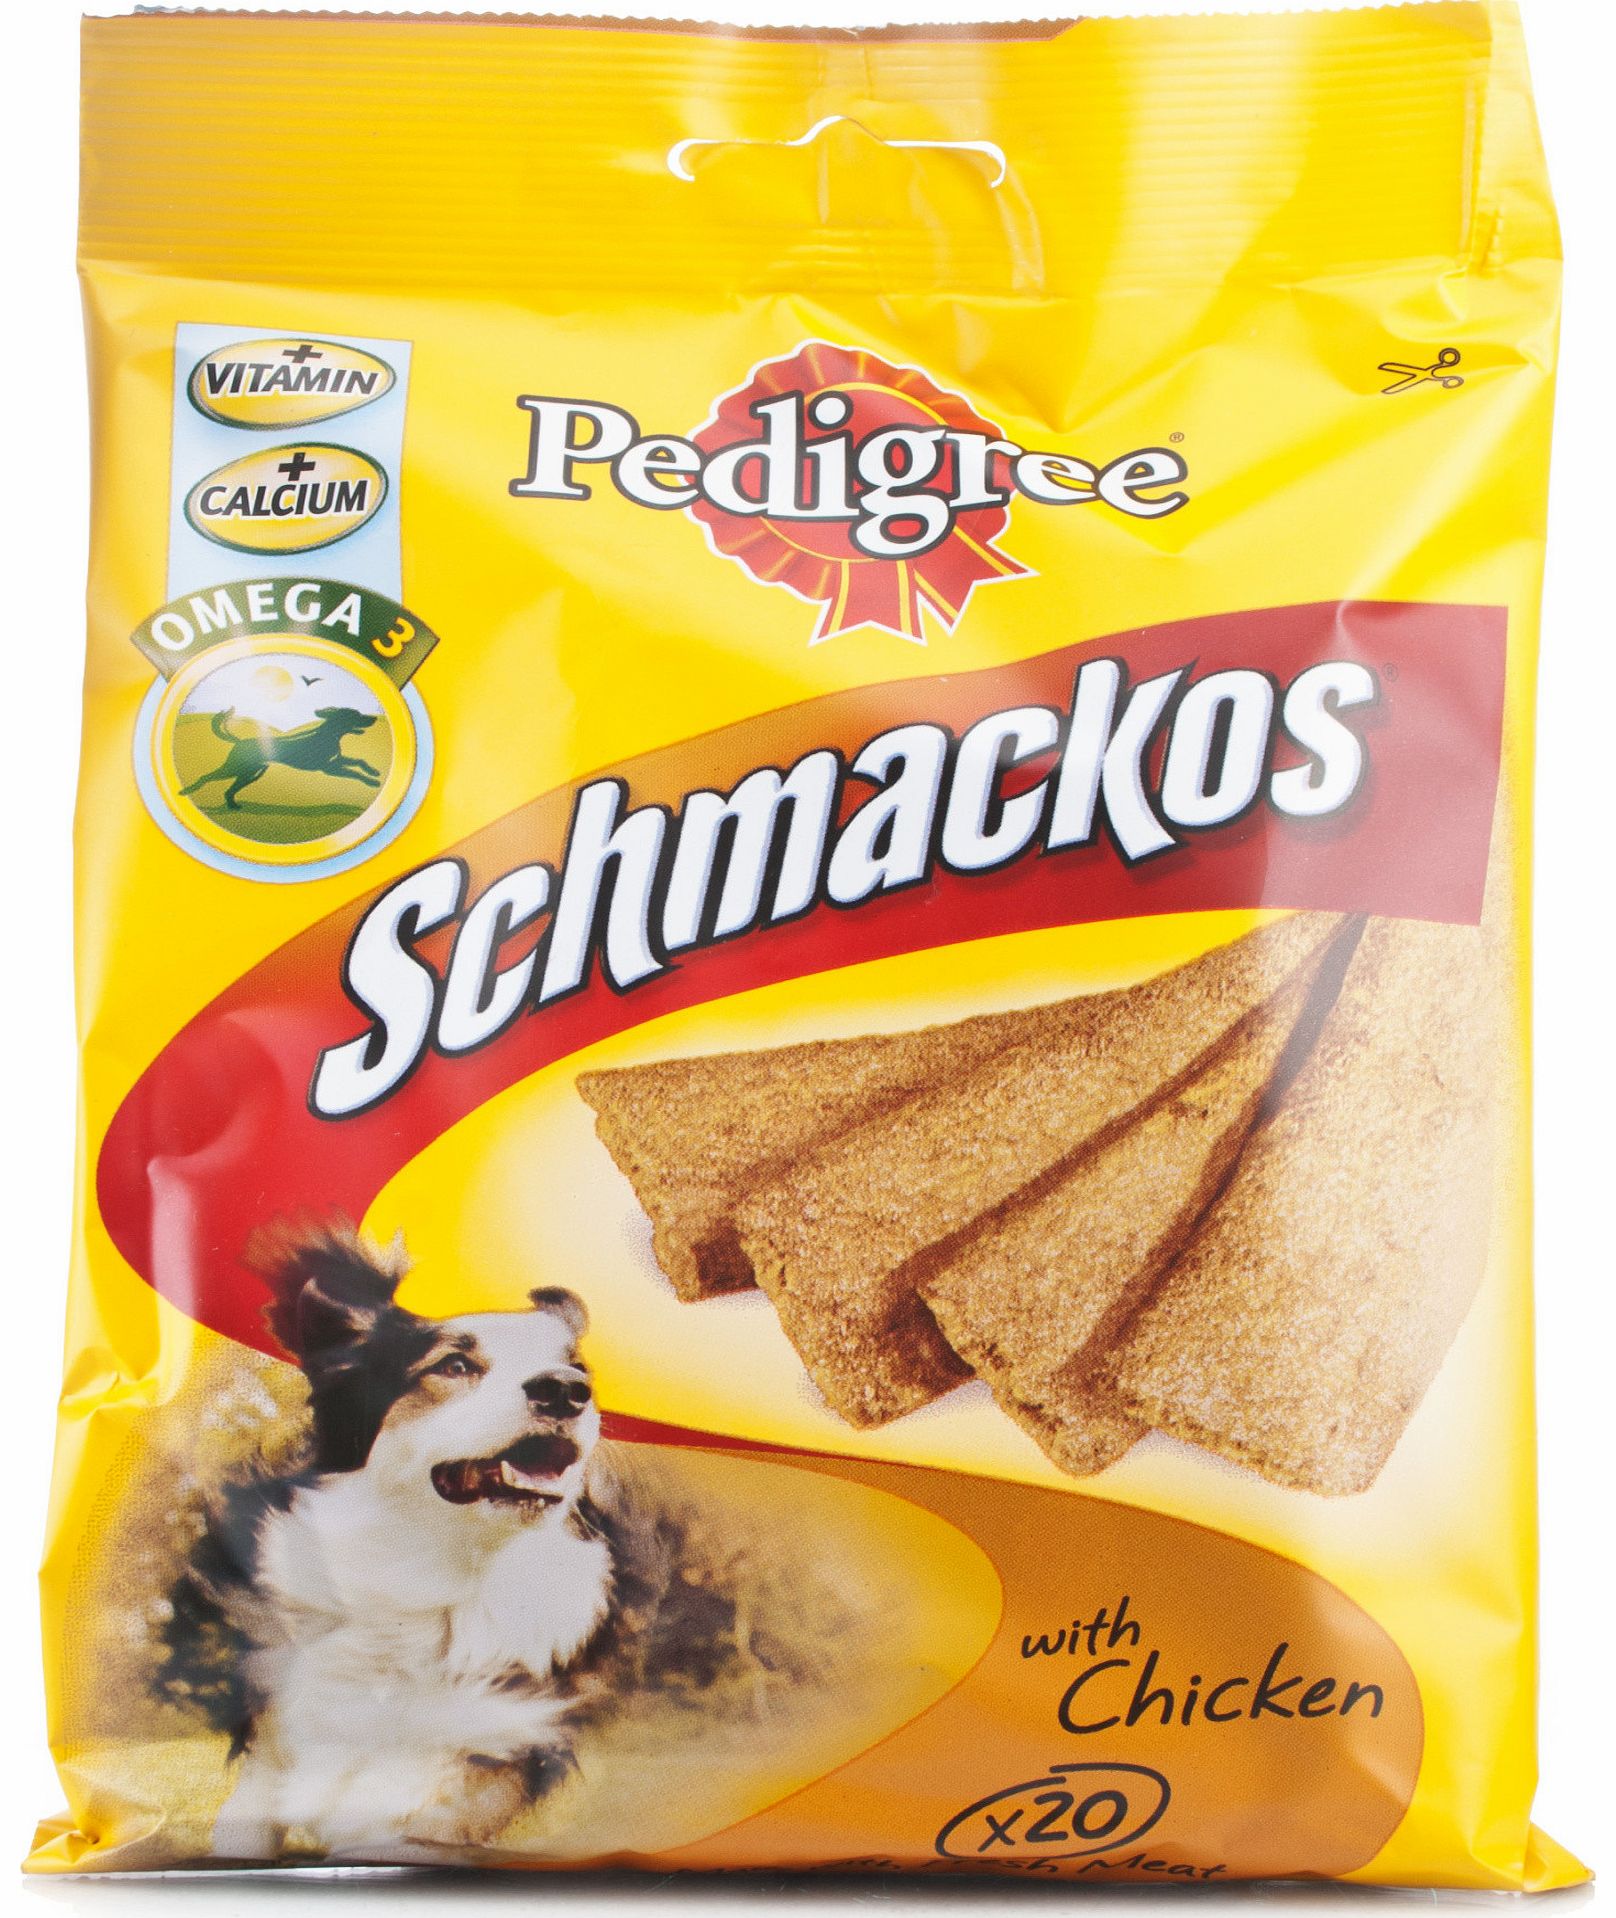 Pedigree Schmackos Chicken 20 sticks